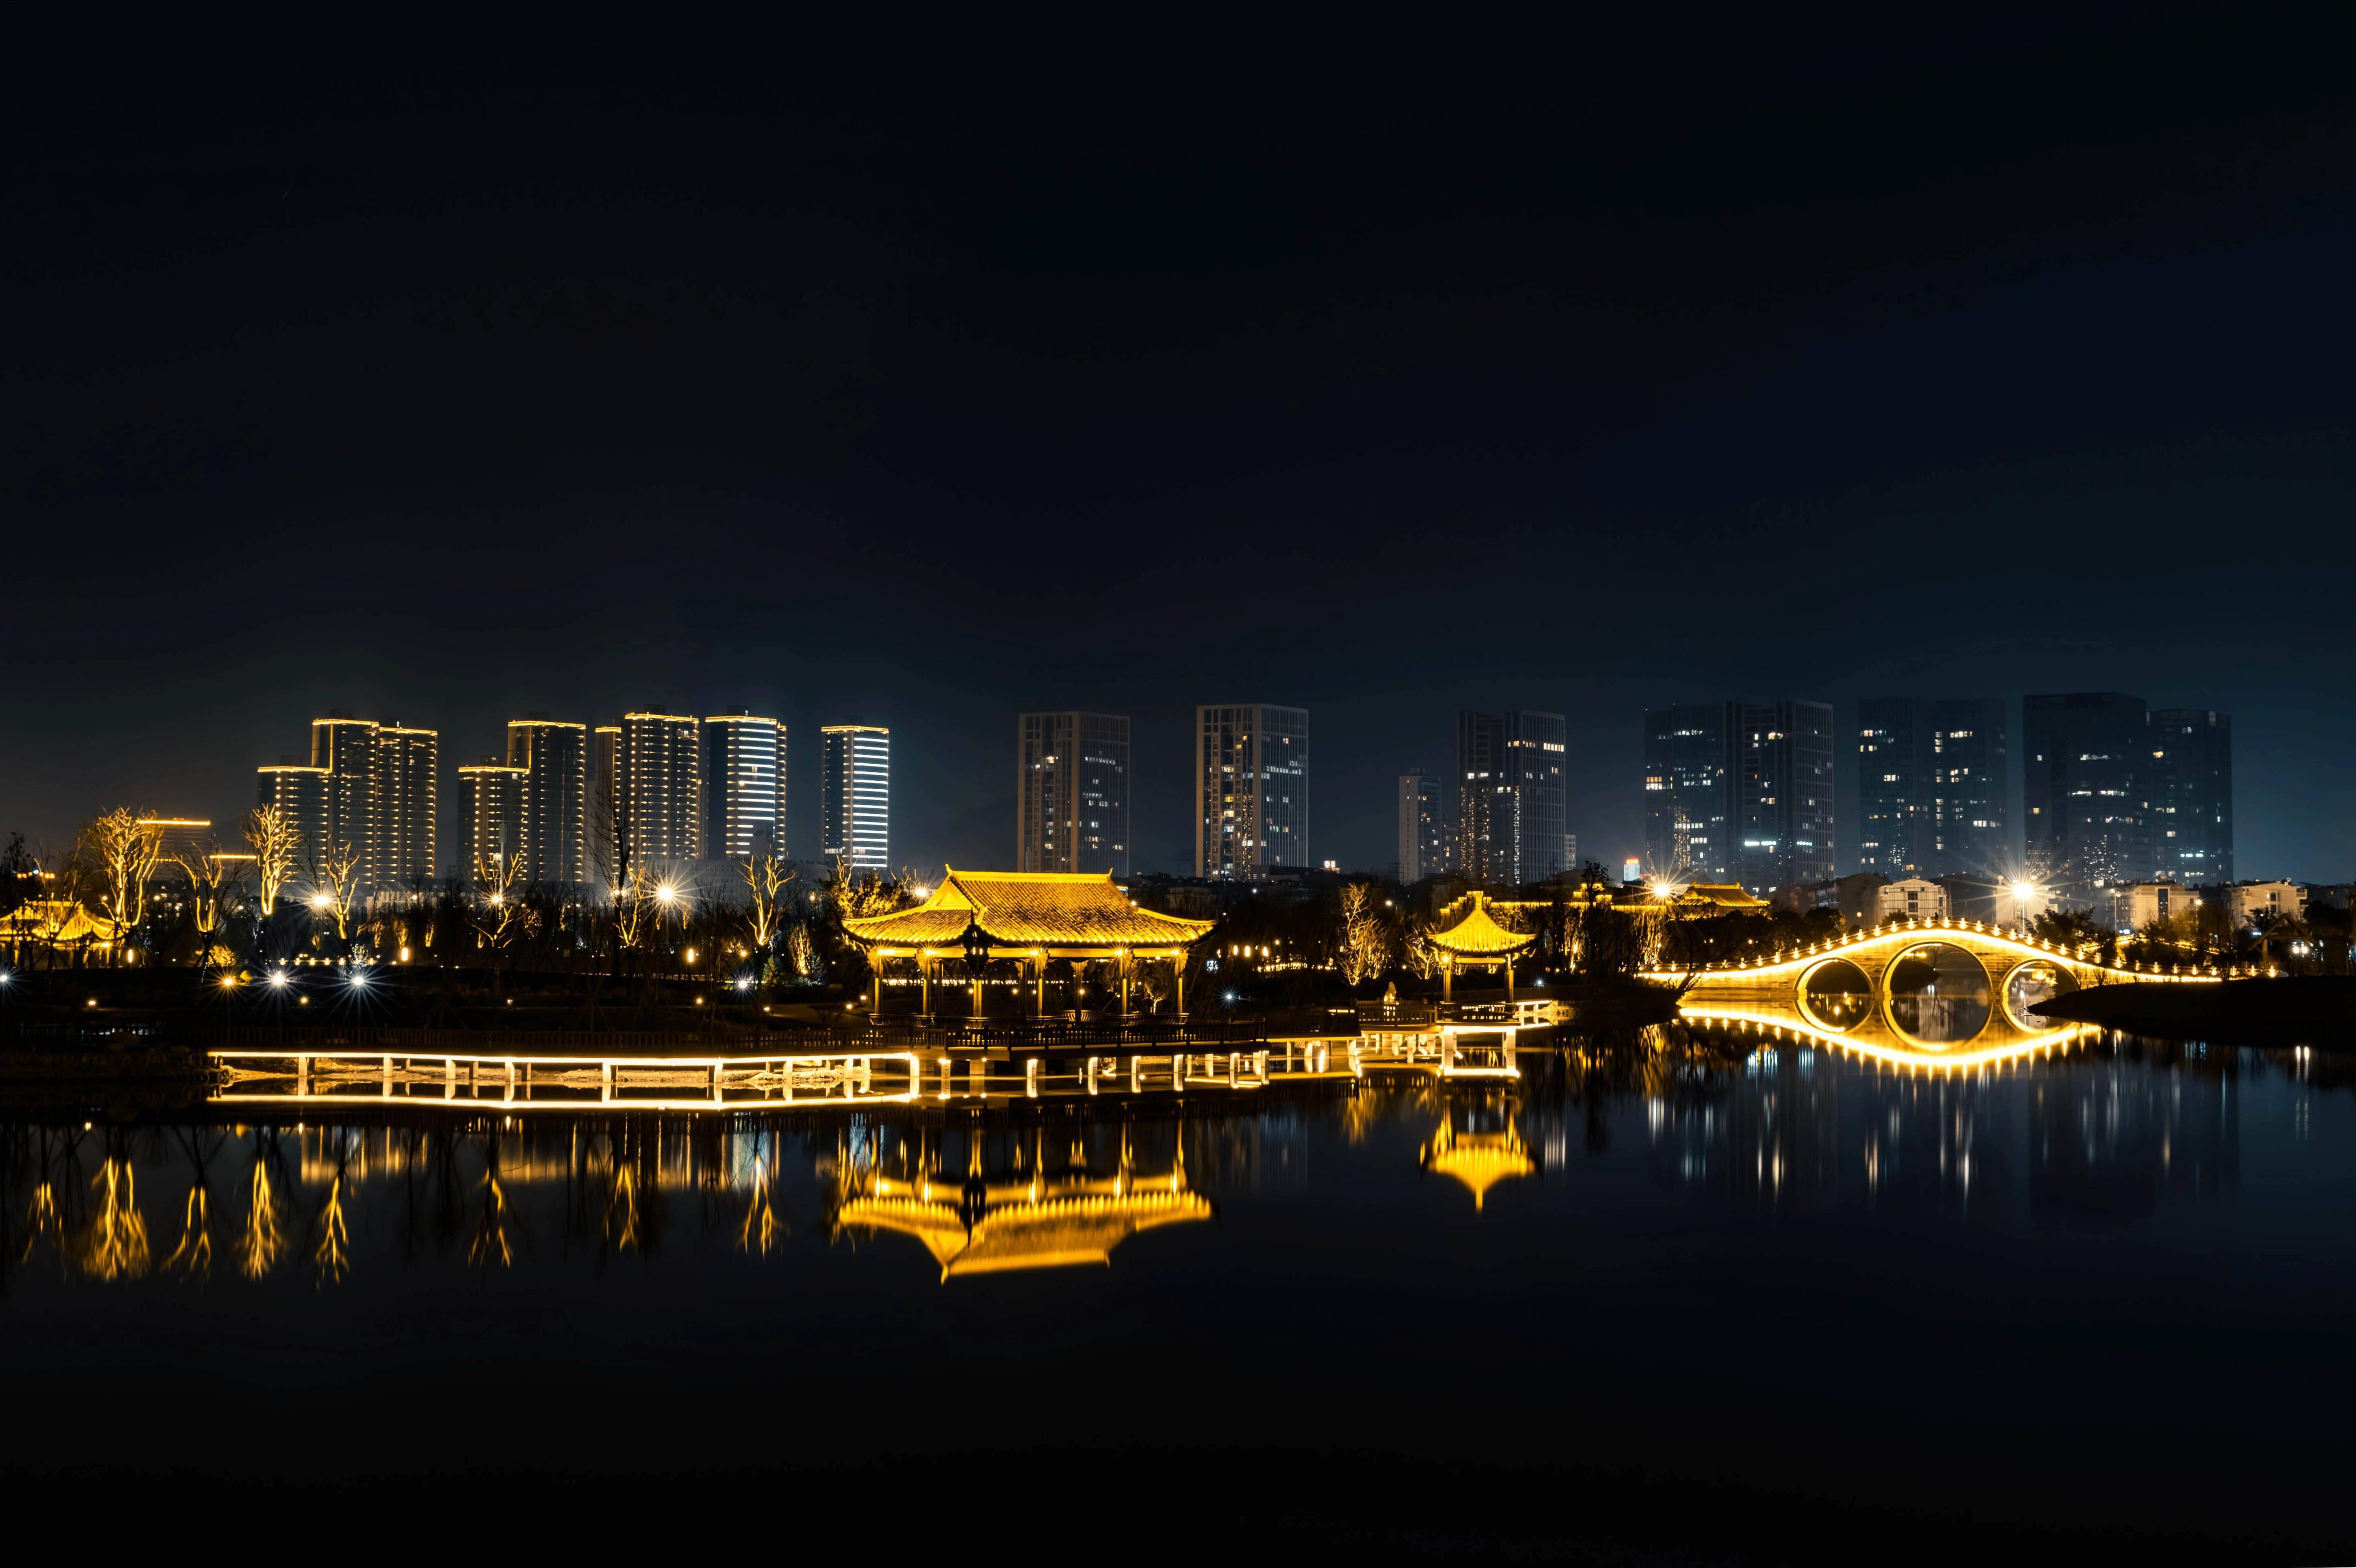 九龙湖夜景图片